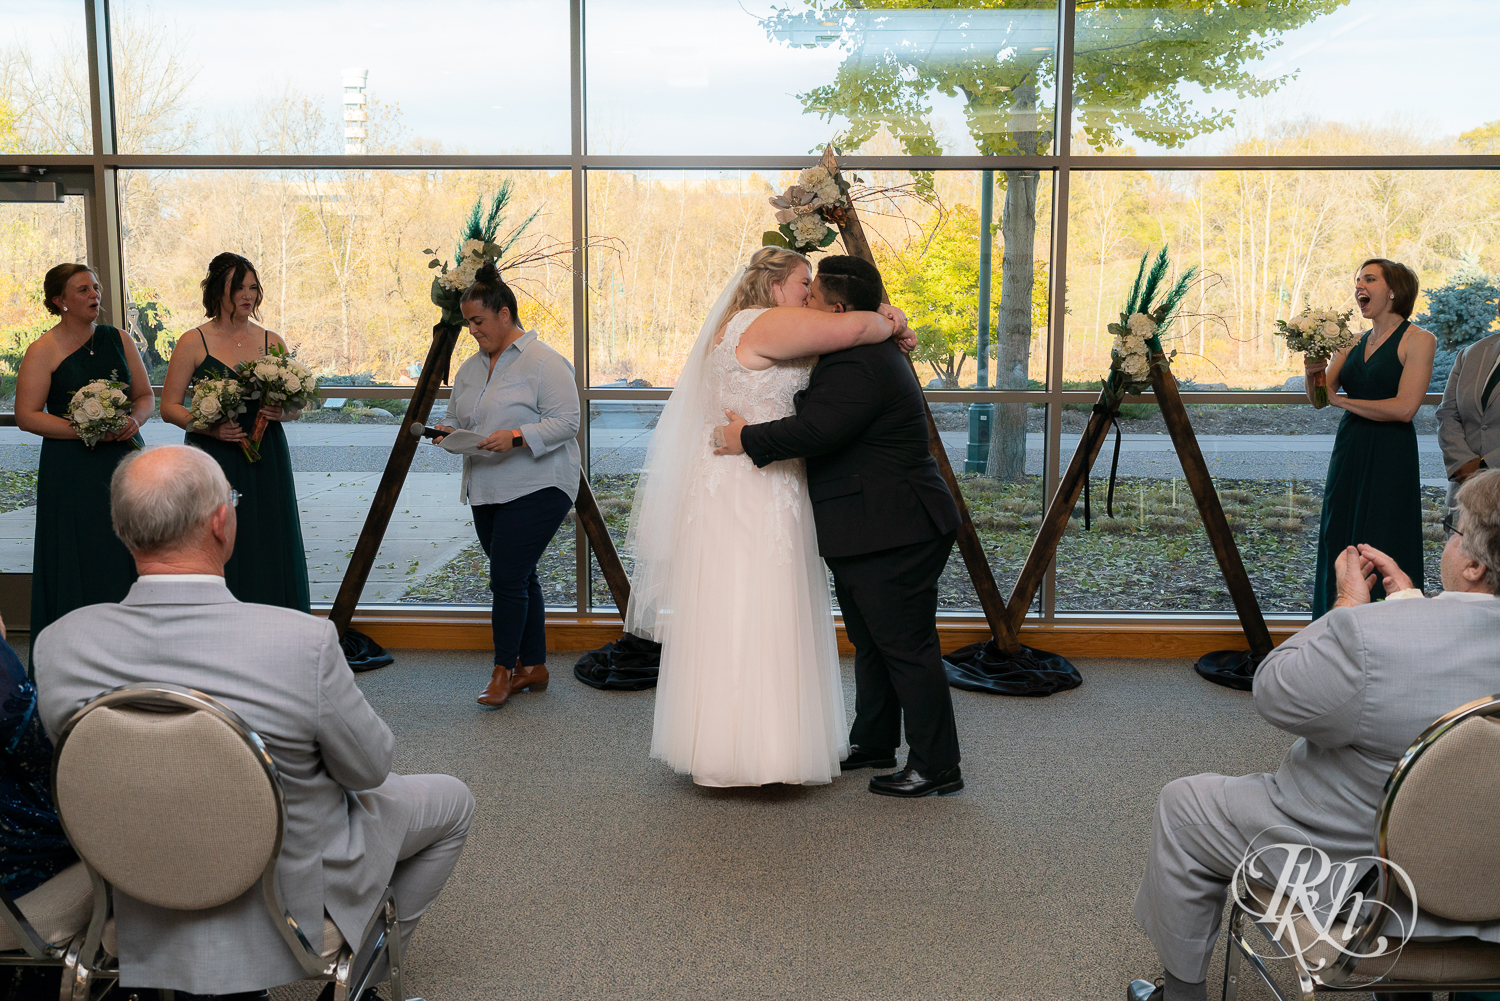 Indoor lesbian wedding ceremony at Eagan Community Center in Eagan, Minnesota.